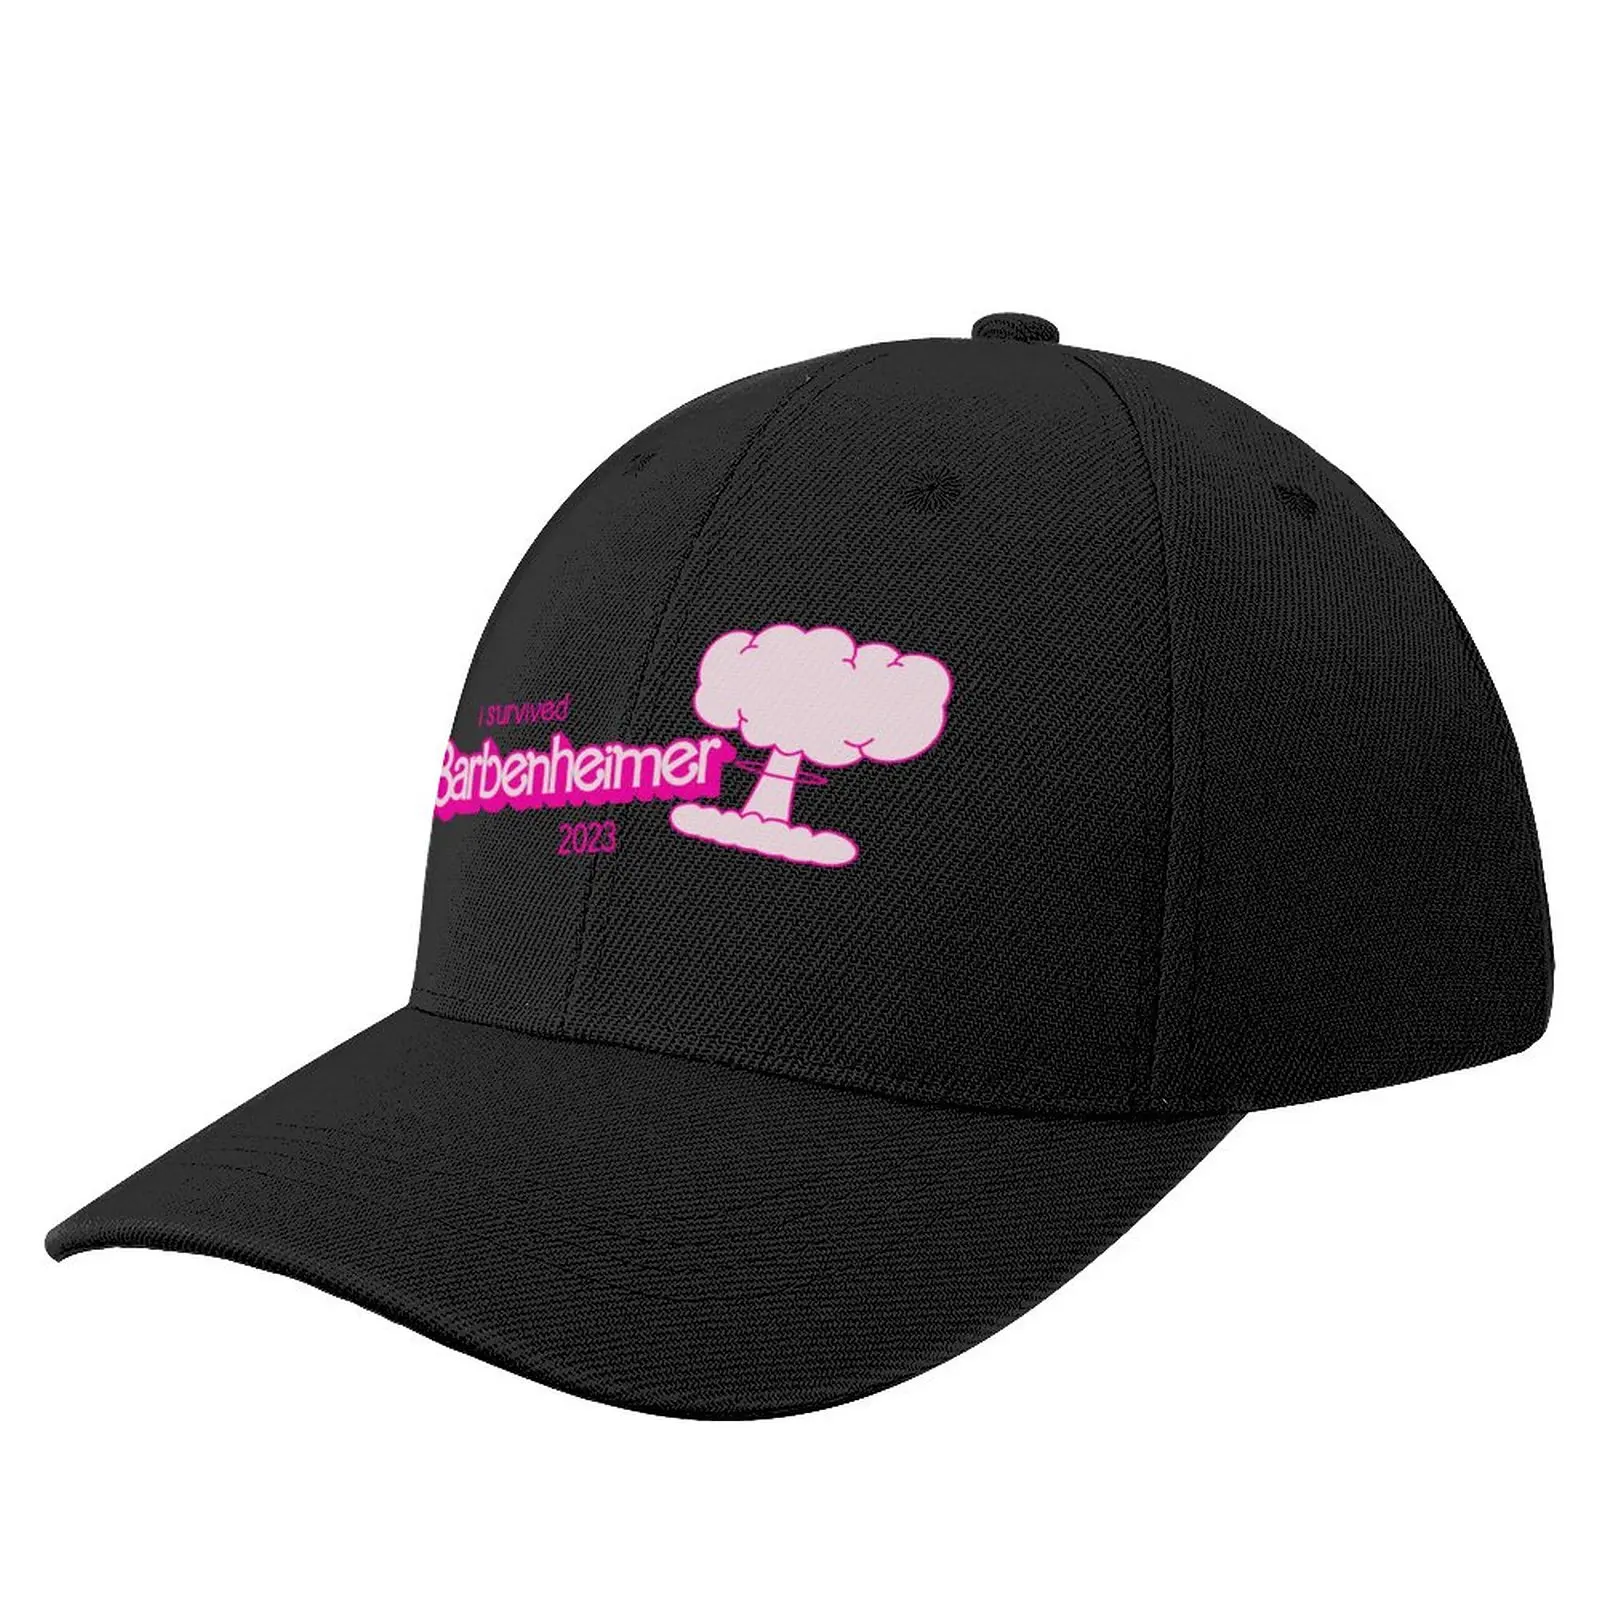 

I Survived Barbenheimer 2023 (July 21) - V2 Baseball Cap beach hat Vintage Hat For Women Men's